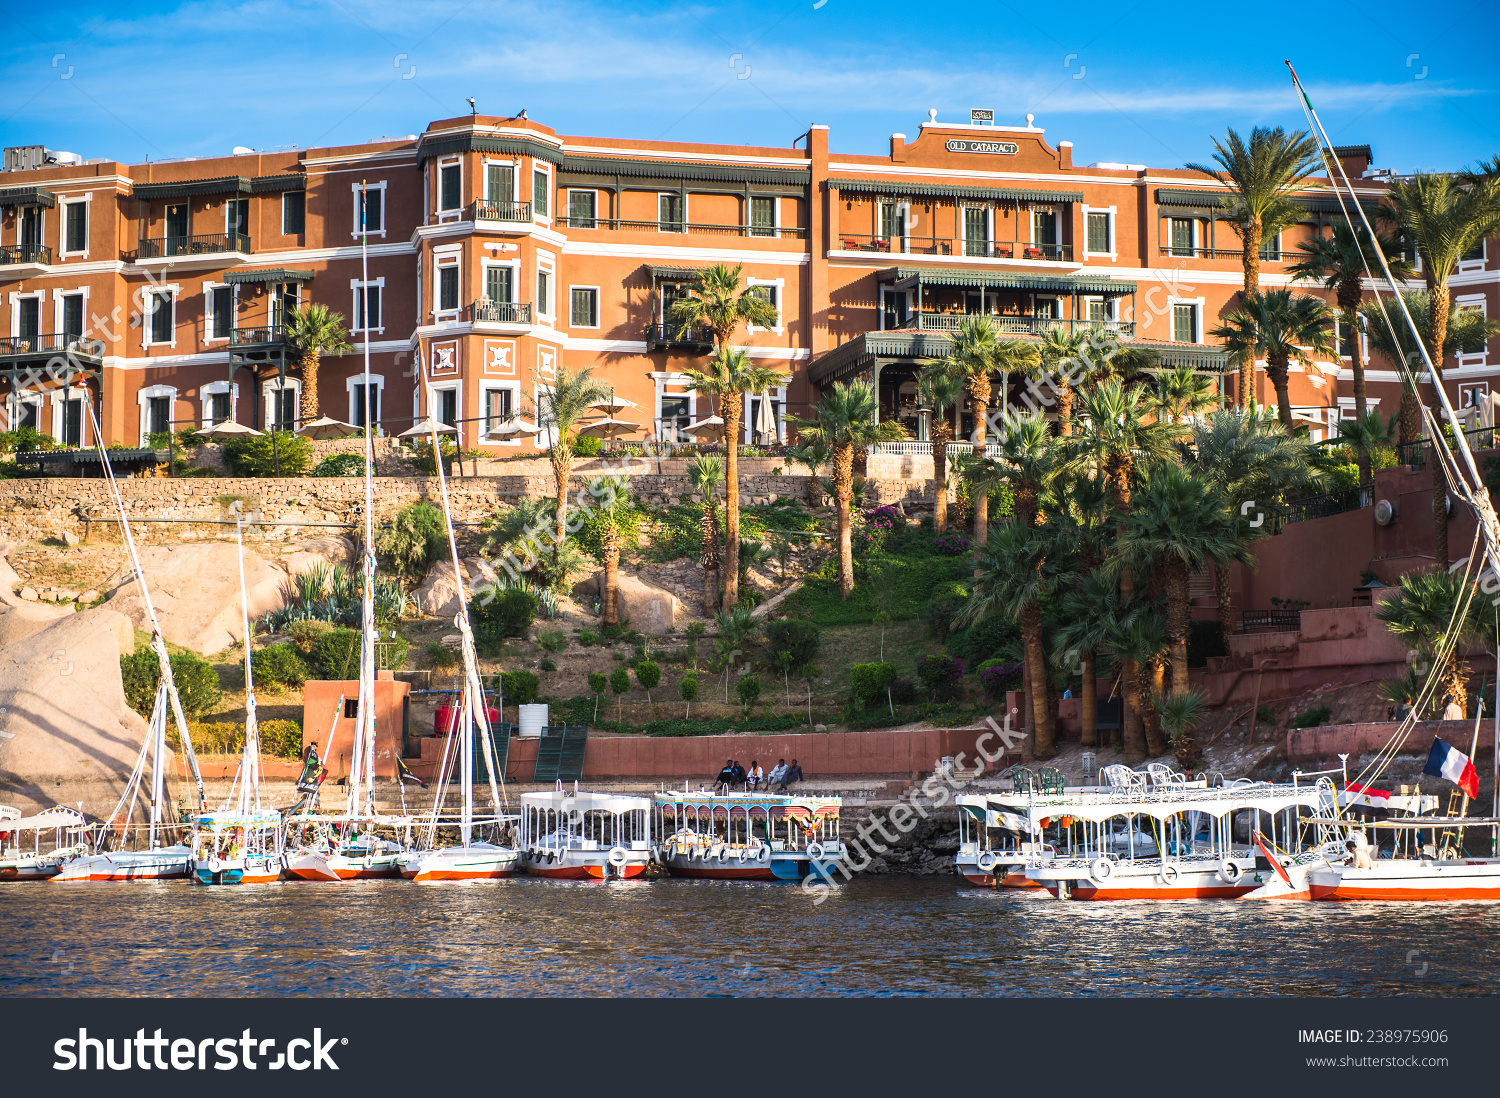 Aswan, Egypt.